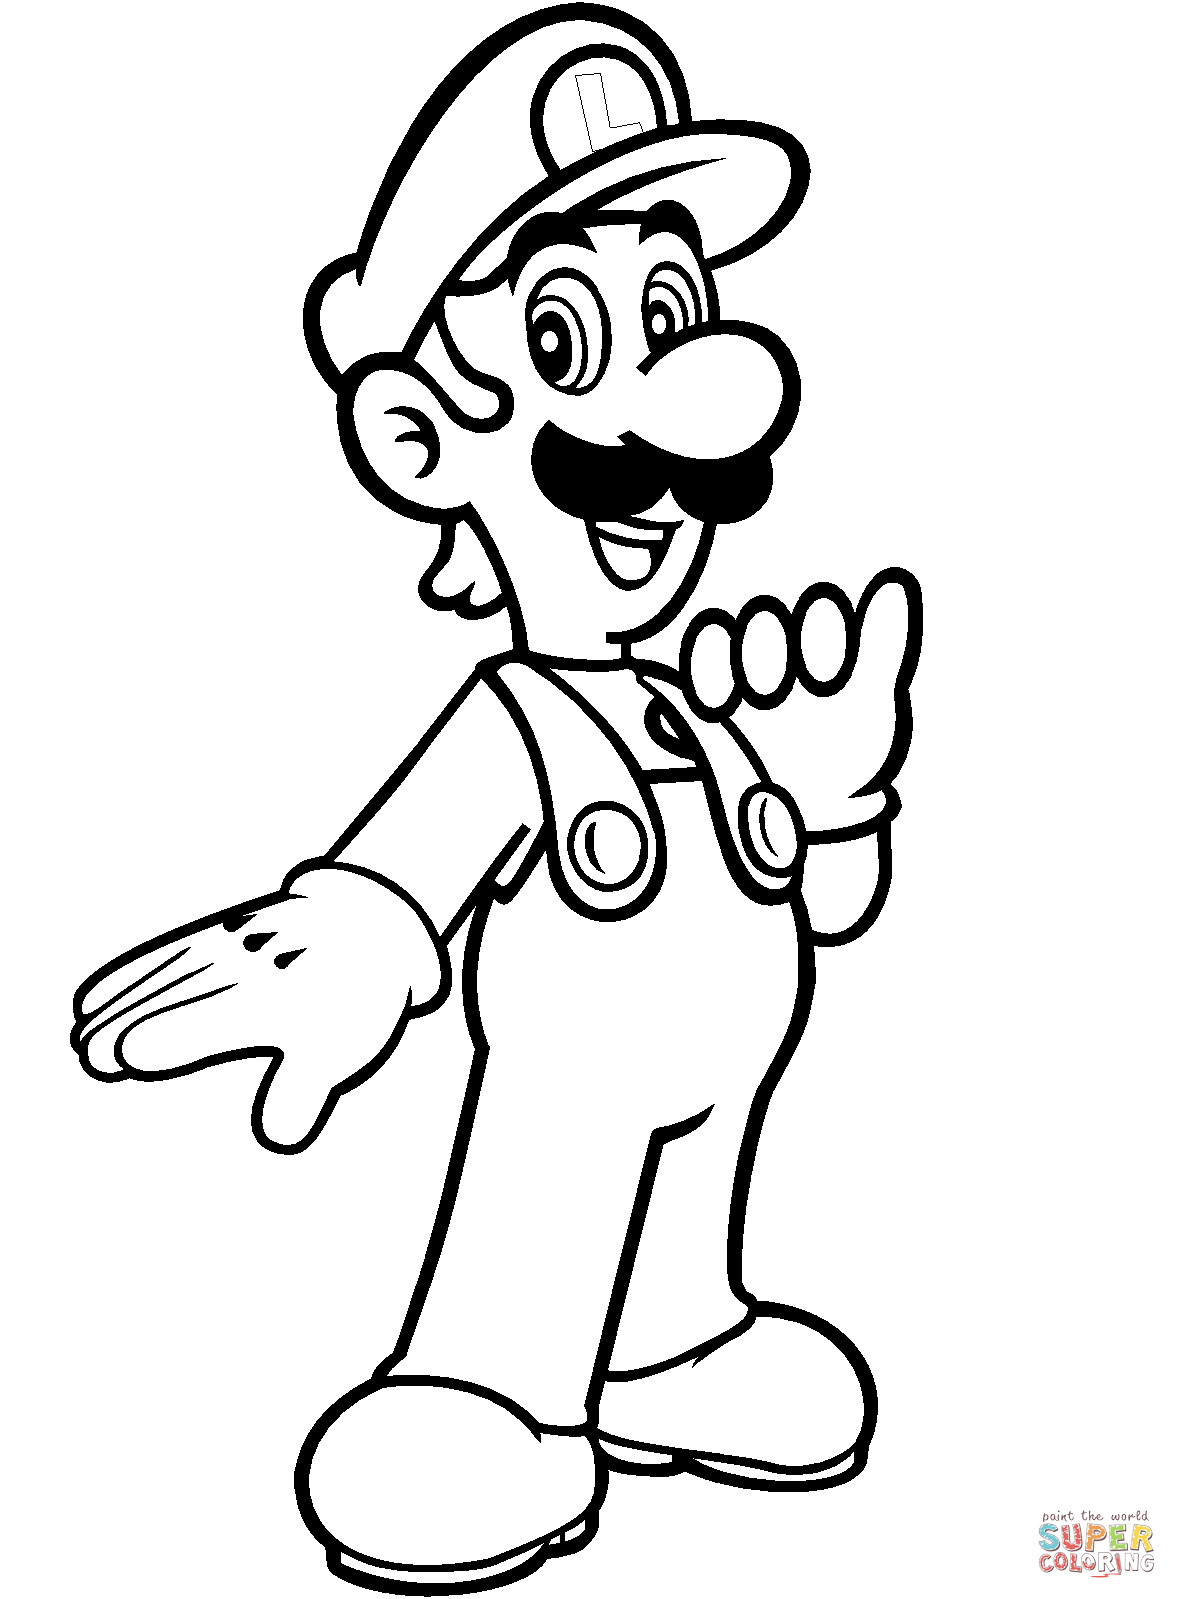 Mario Coloring Pages Printable Free
 Luigi from Mario Bros coloring page